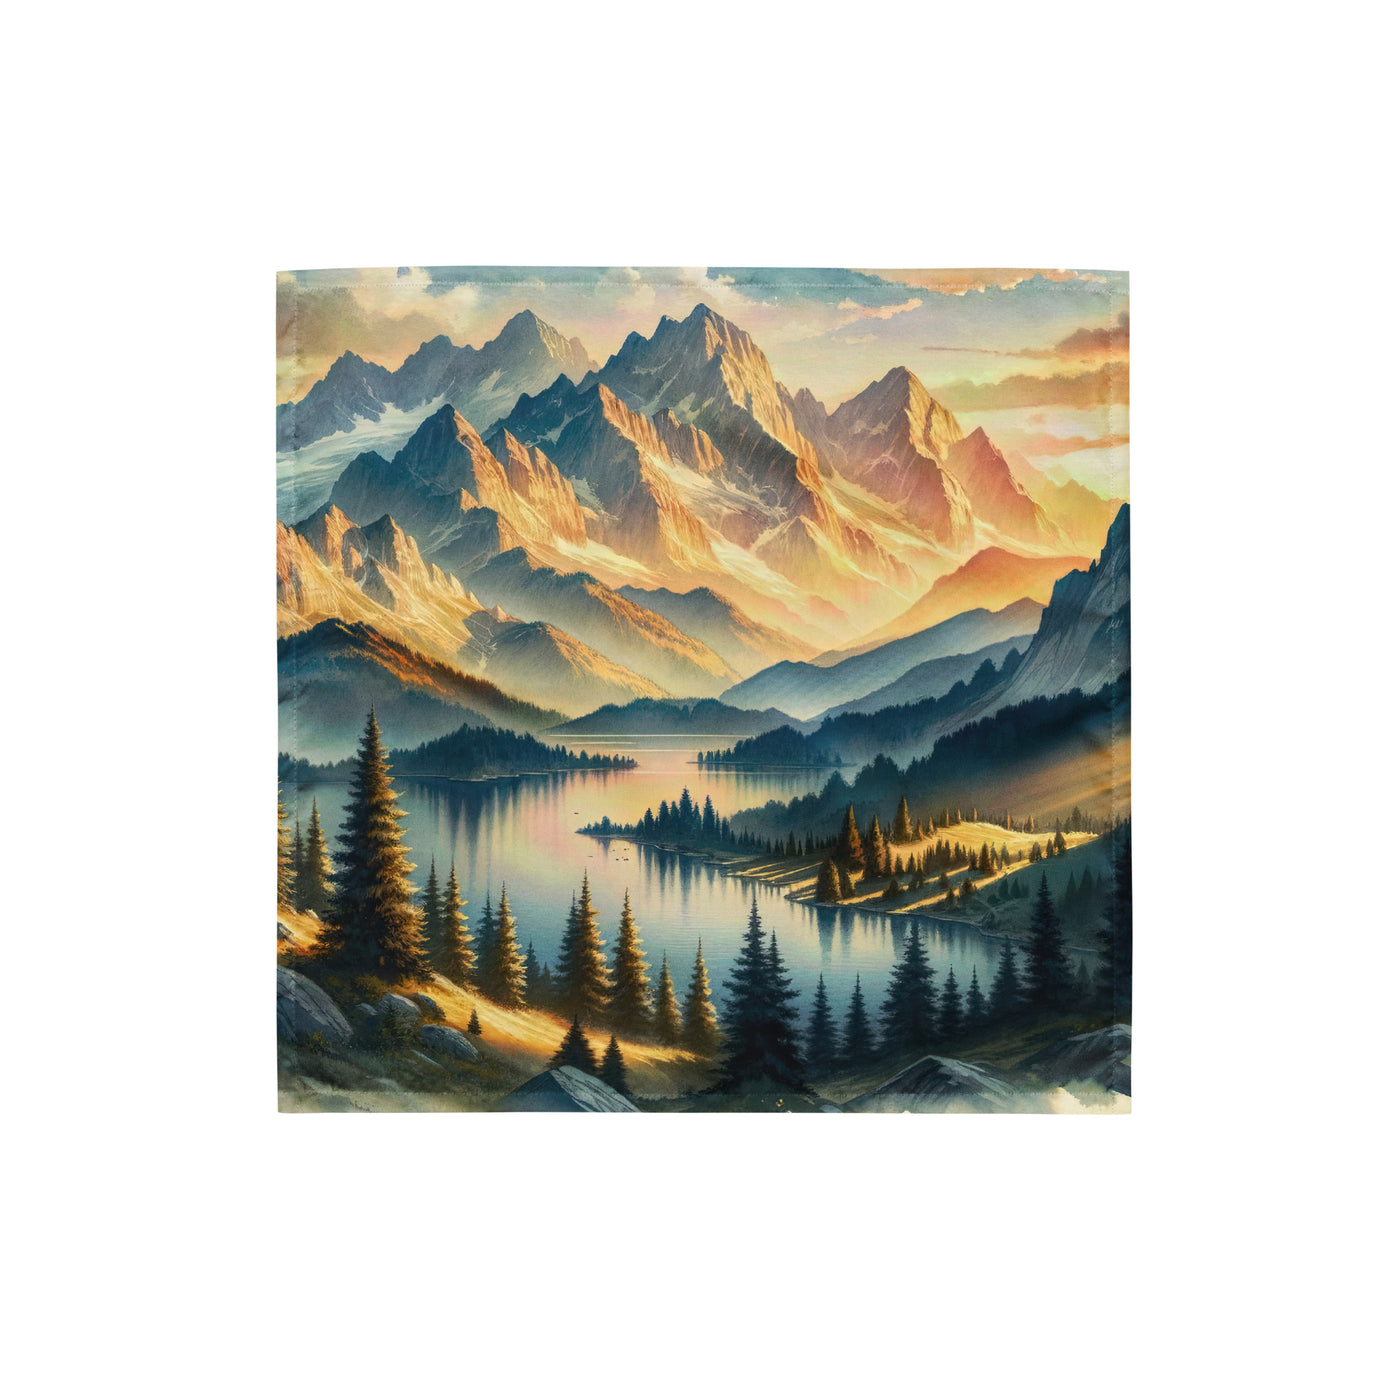 Aquarell der Alpenpracht bei Sonnenuntergang, Berge im goldenen Licht - Bandana (All-Over Print) berge xxx yyy zzz S